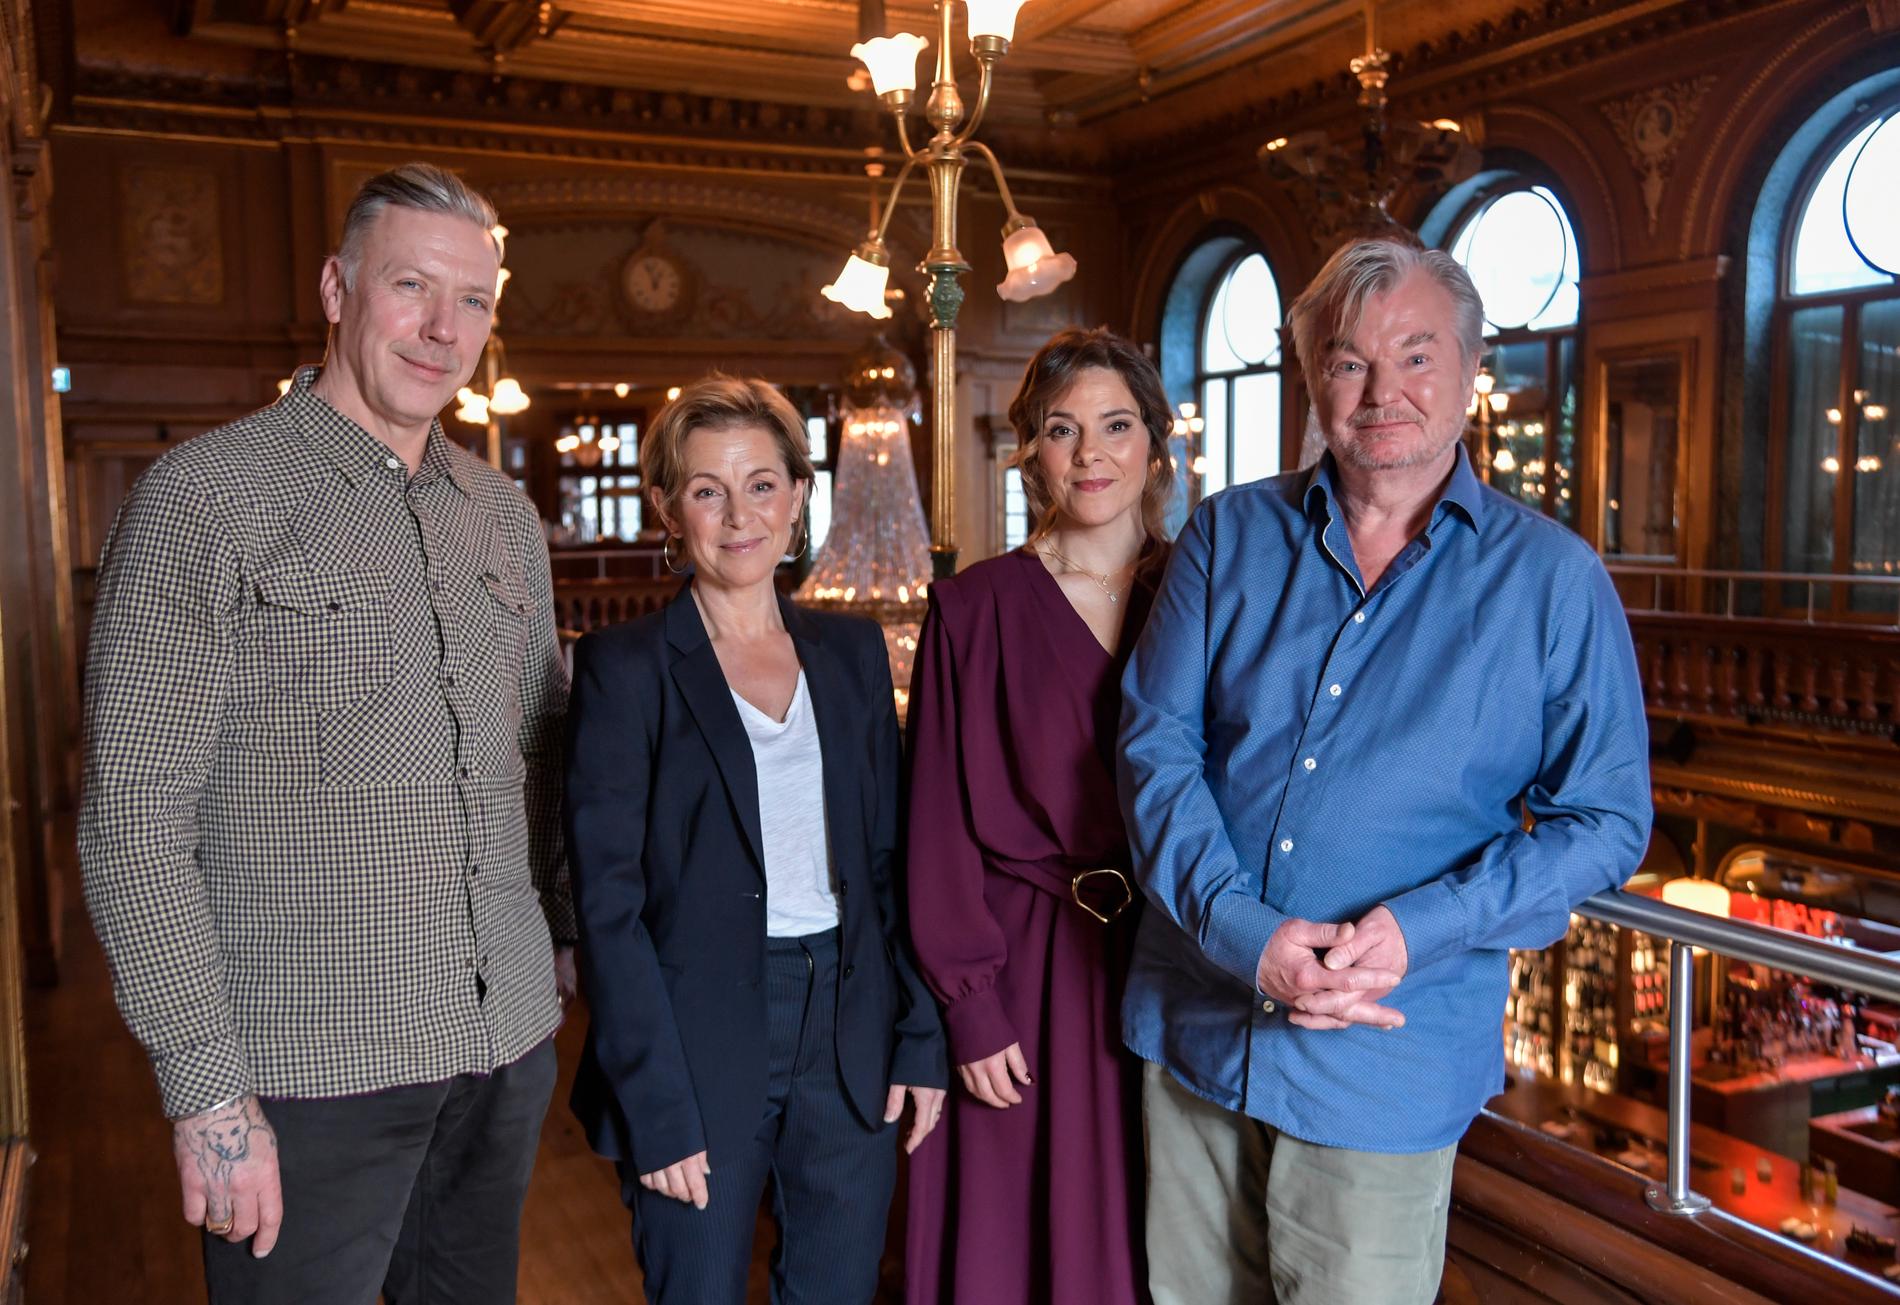 Mikael Persbrandt, Helen Sjöholm, Vanna Rosenberg och Peter Dalle spelar huvudrollerna i Dalles nya film "Tills solen går upp", som får premiär på juldagen.